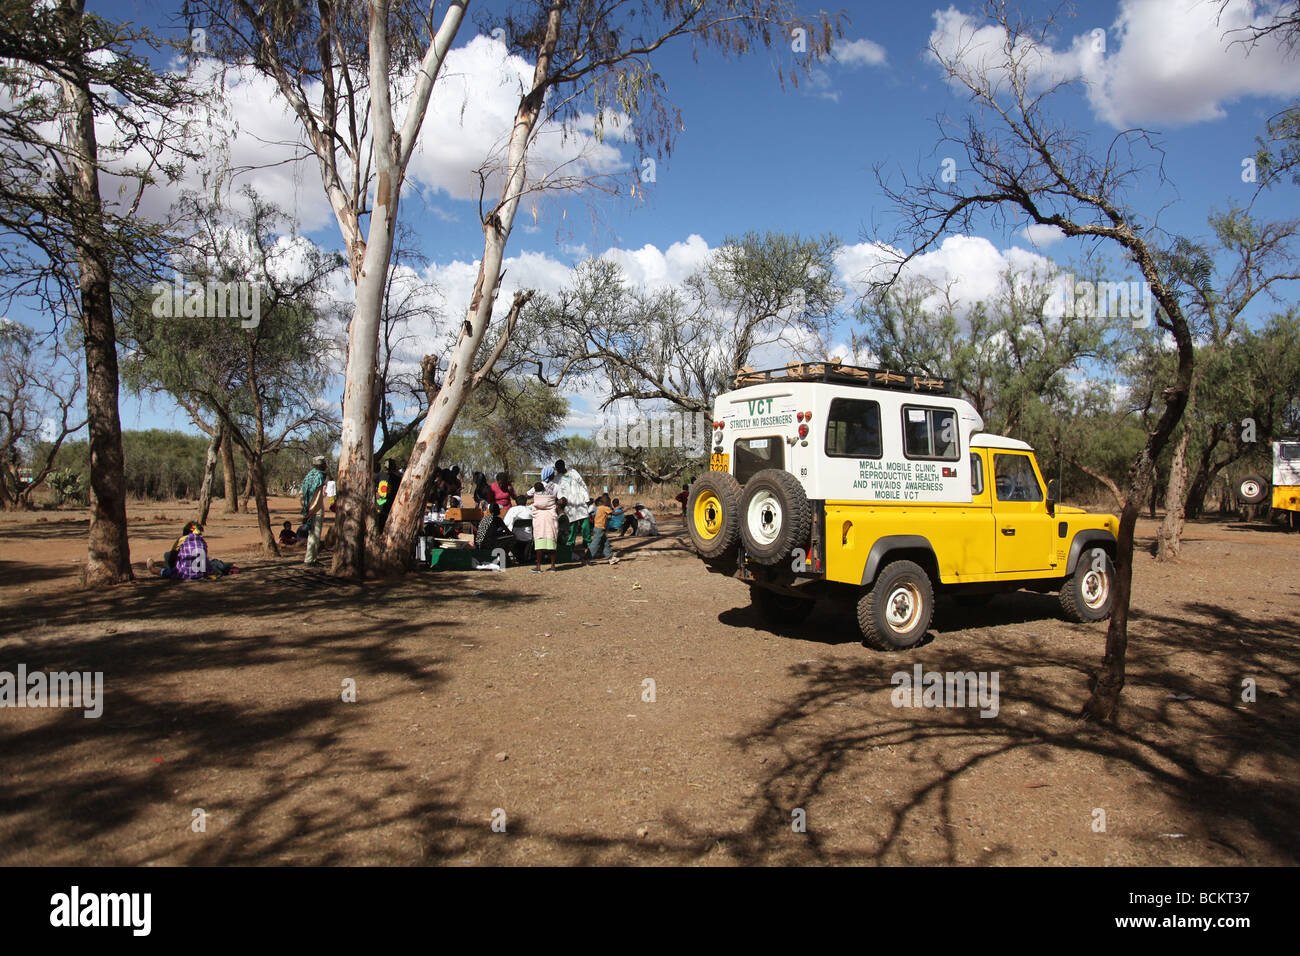 Regione di Laikipia in Kenya 2009, la carità CHAT gestisce una clinica che offre cure primarie per principalmente donne e bambini. Foto Stock